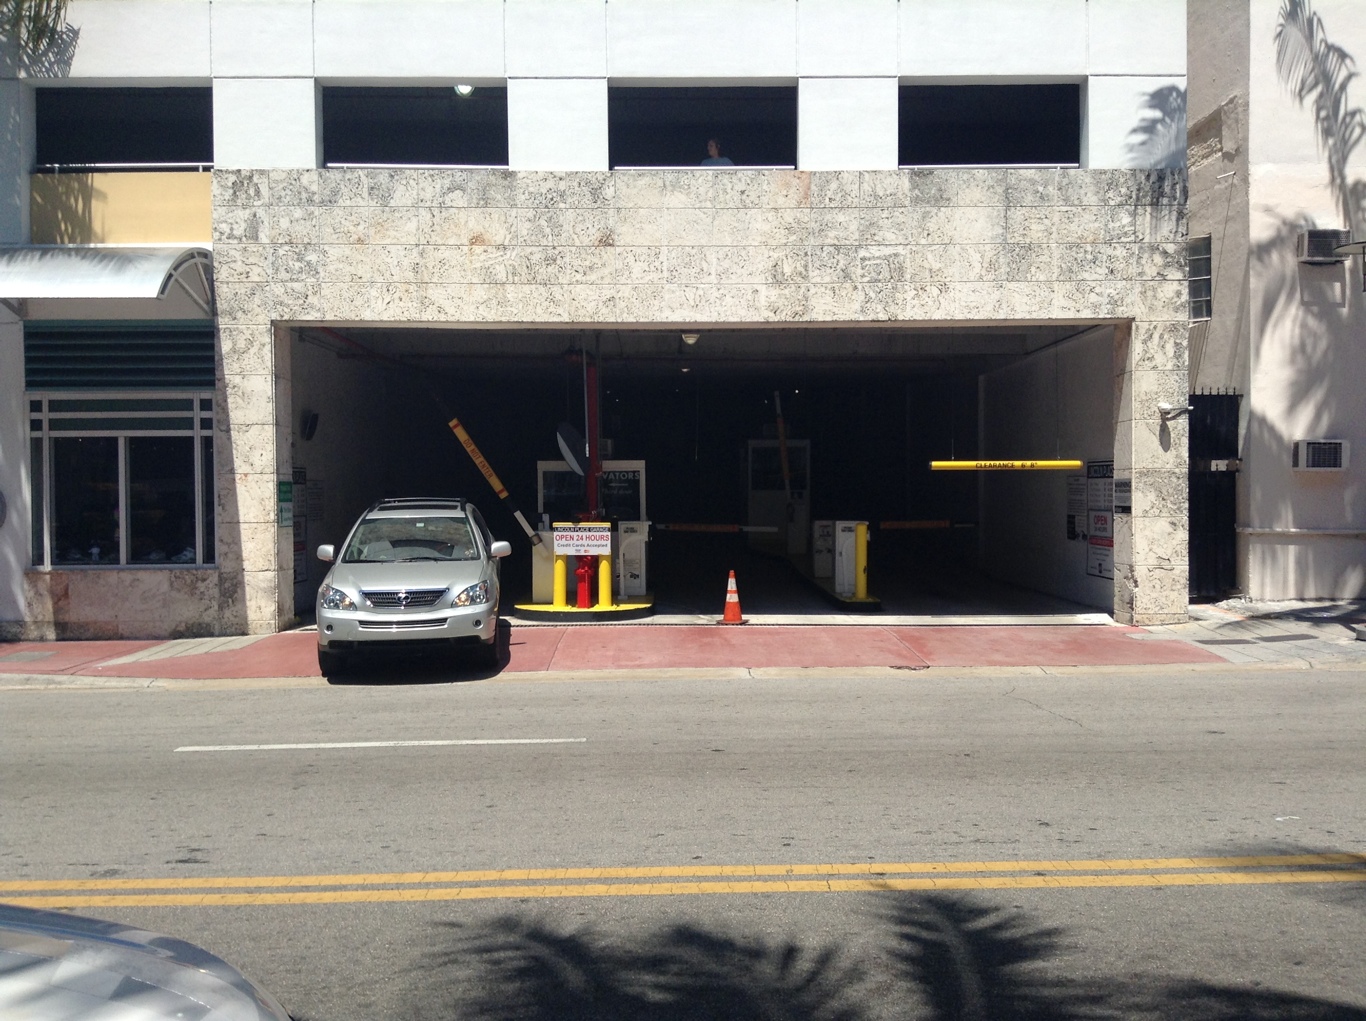 Miami Beach, FL Monthly Parking & Garages Near Me - Spacer